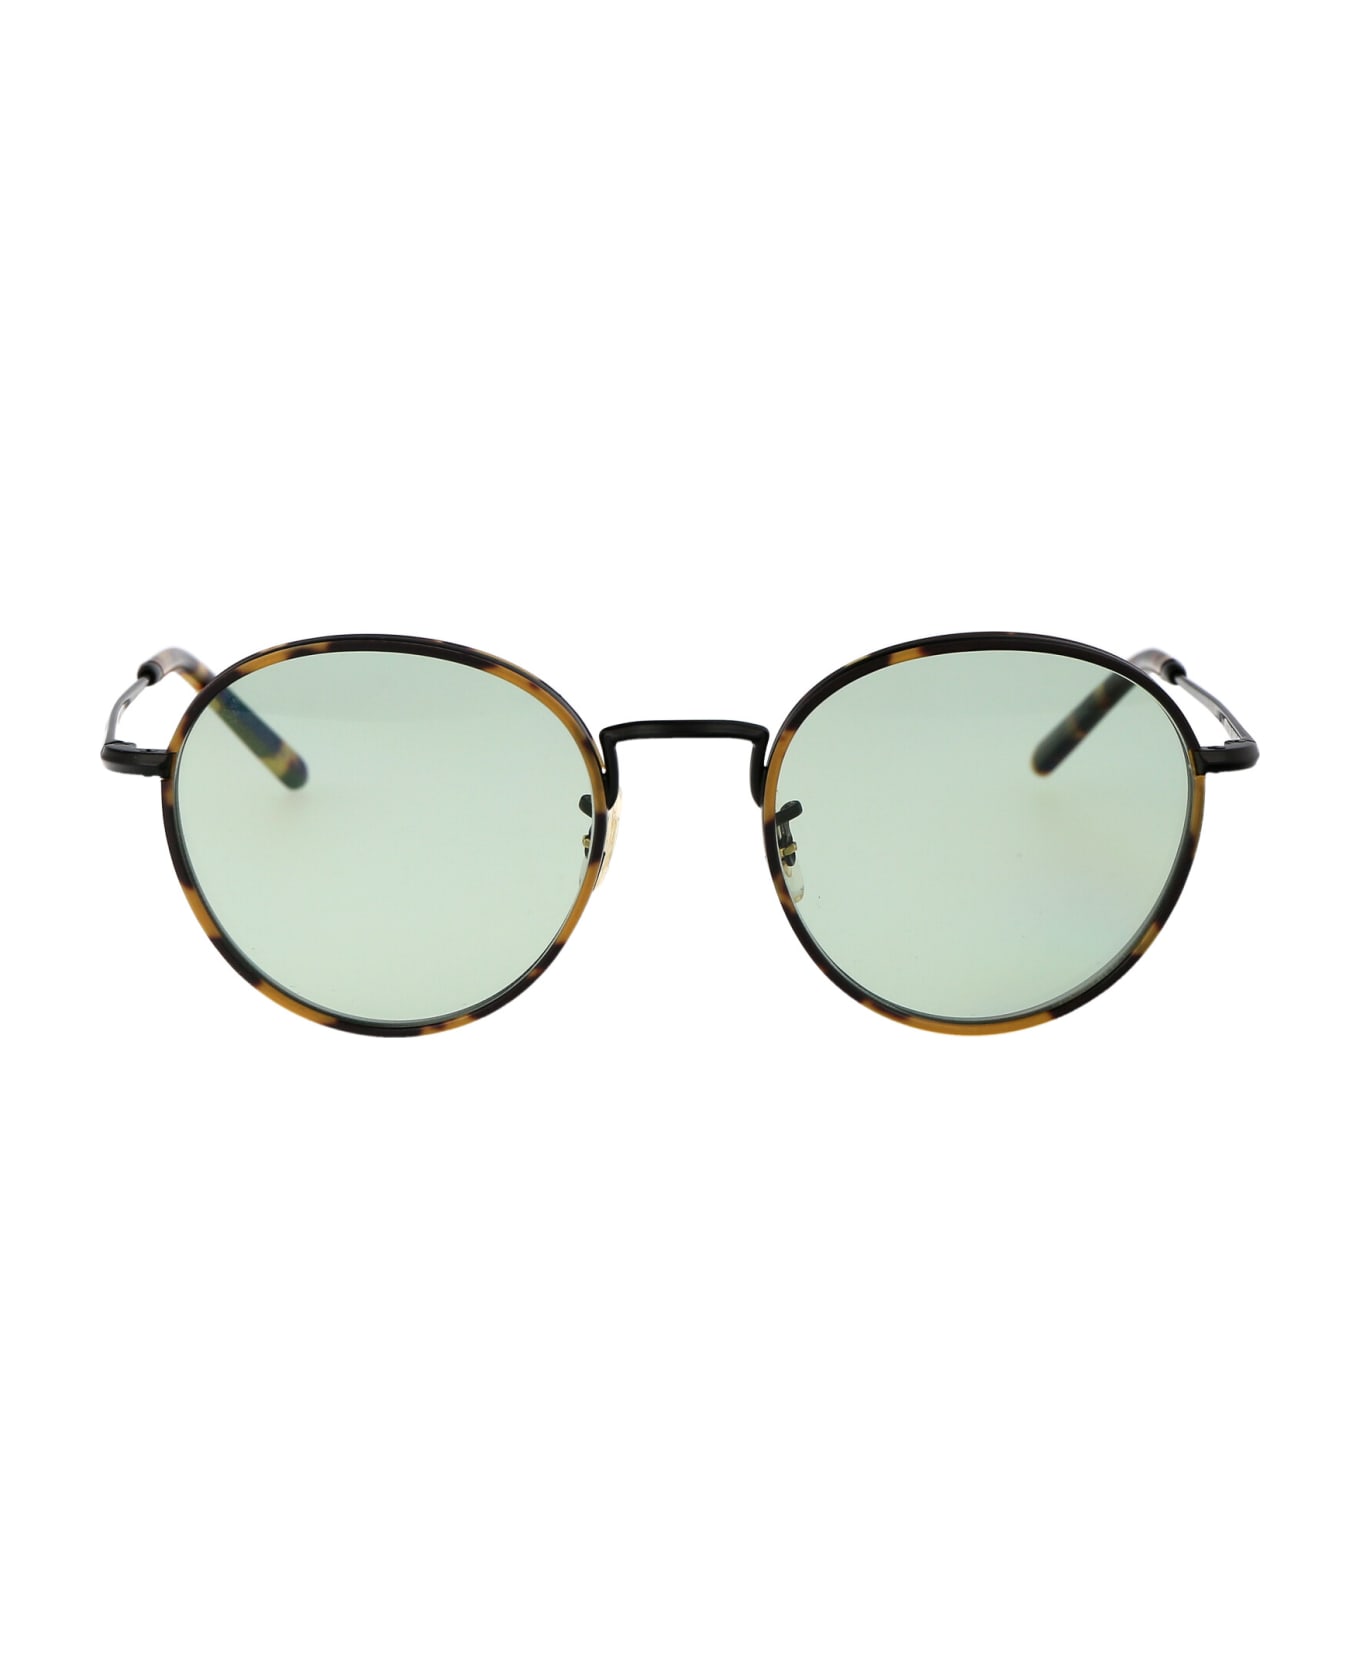 Oliver Peoples Sidell Glasses - 5062 Matte Black/DTB